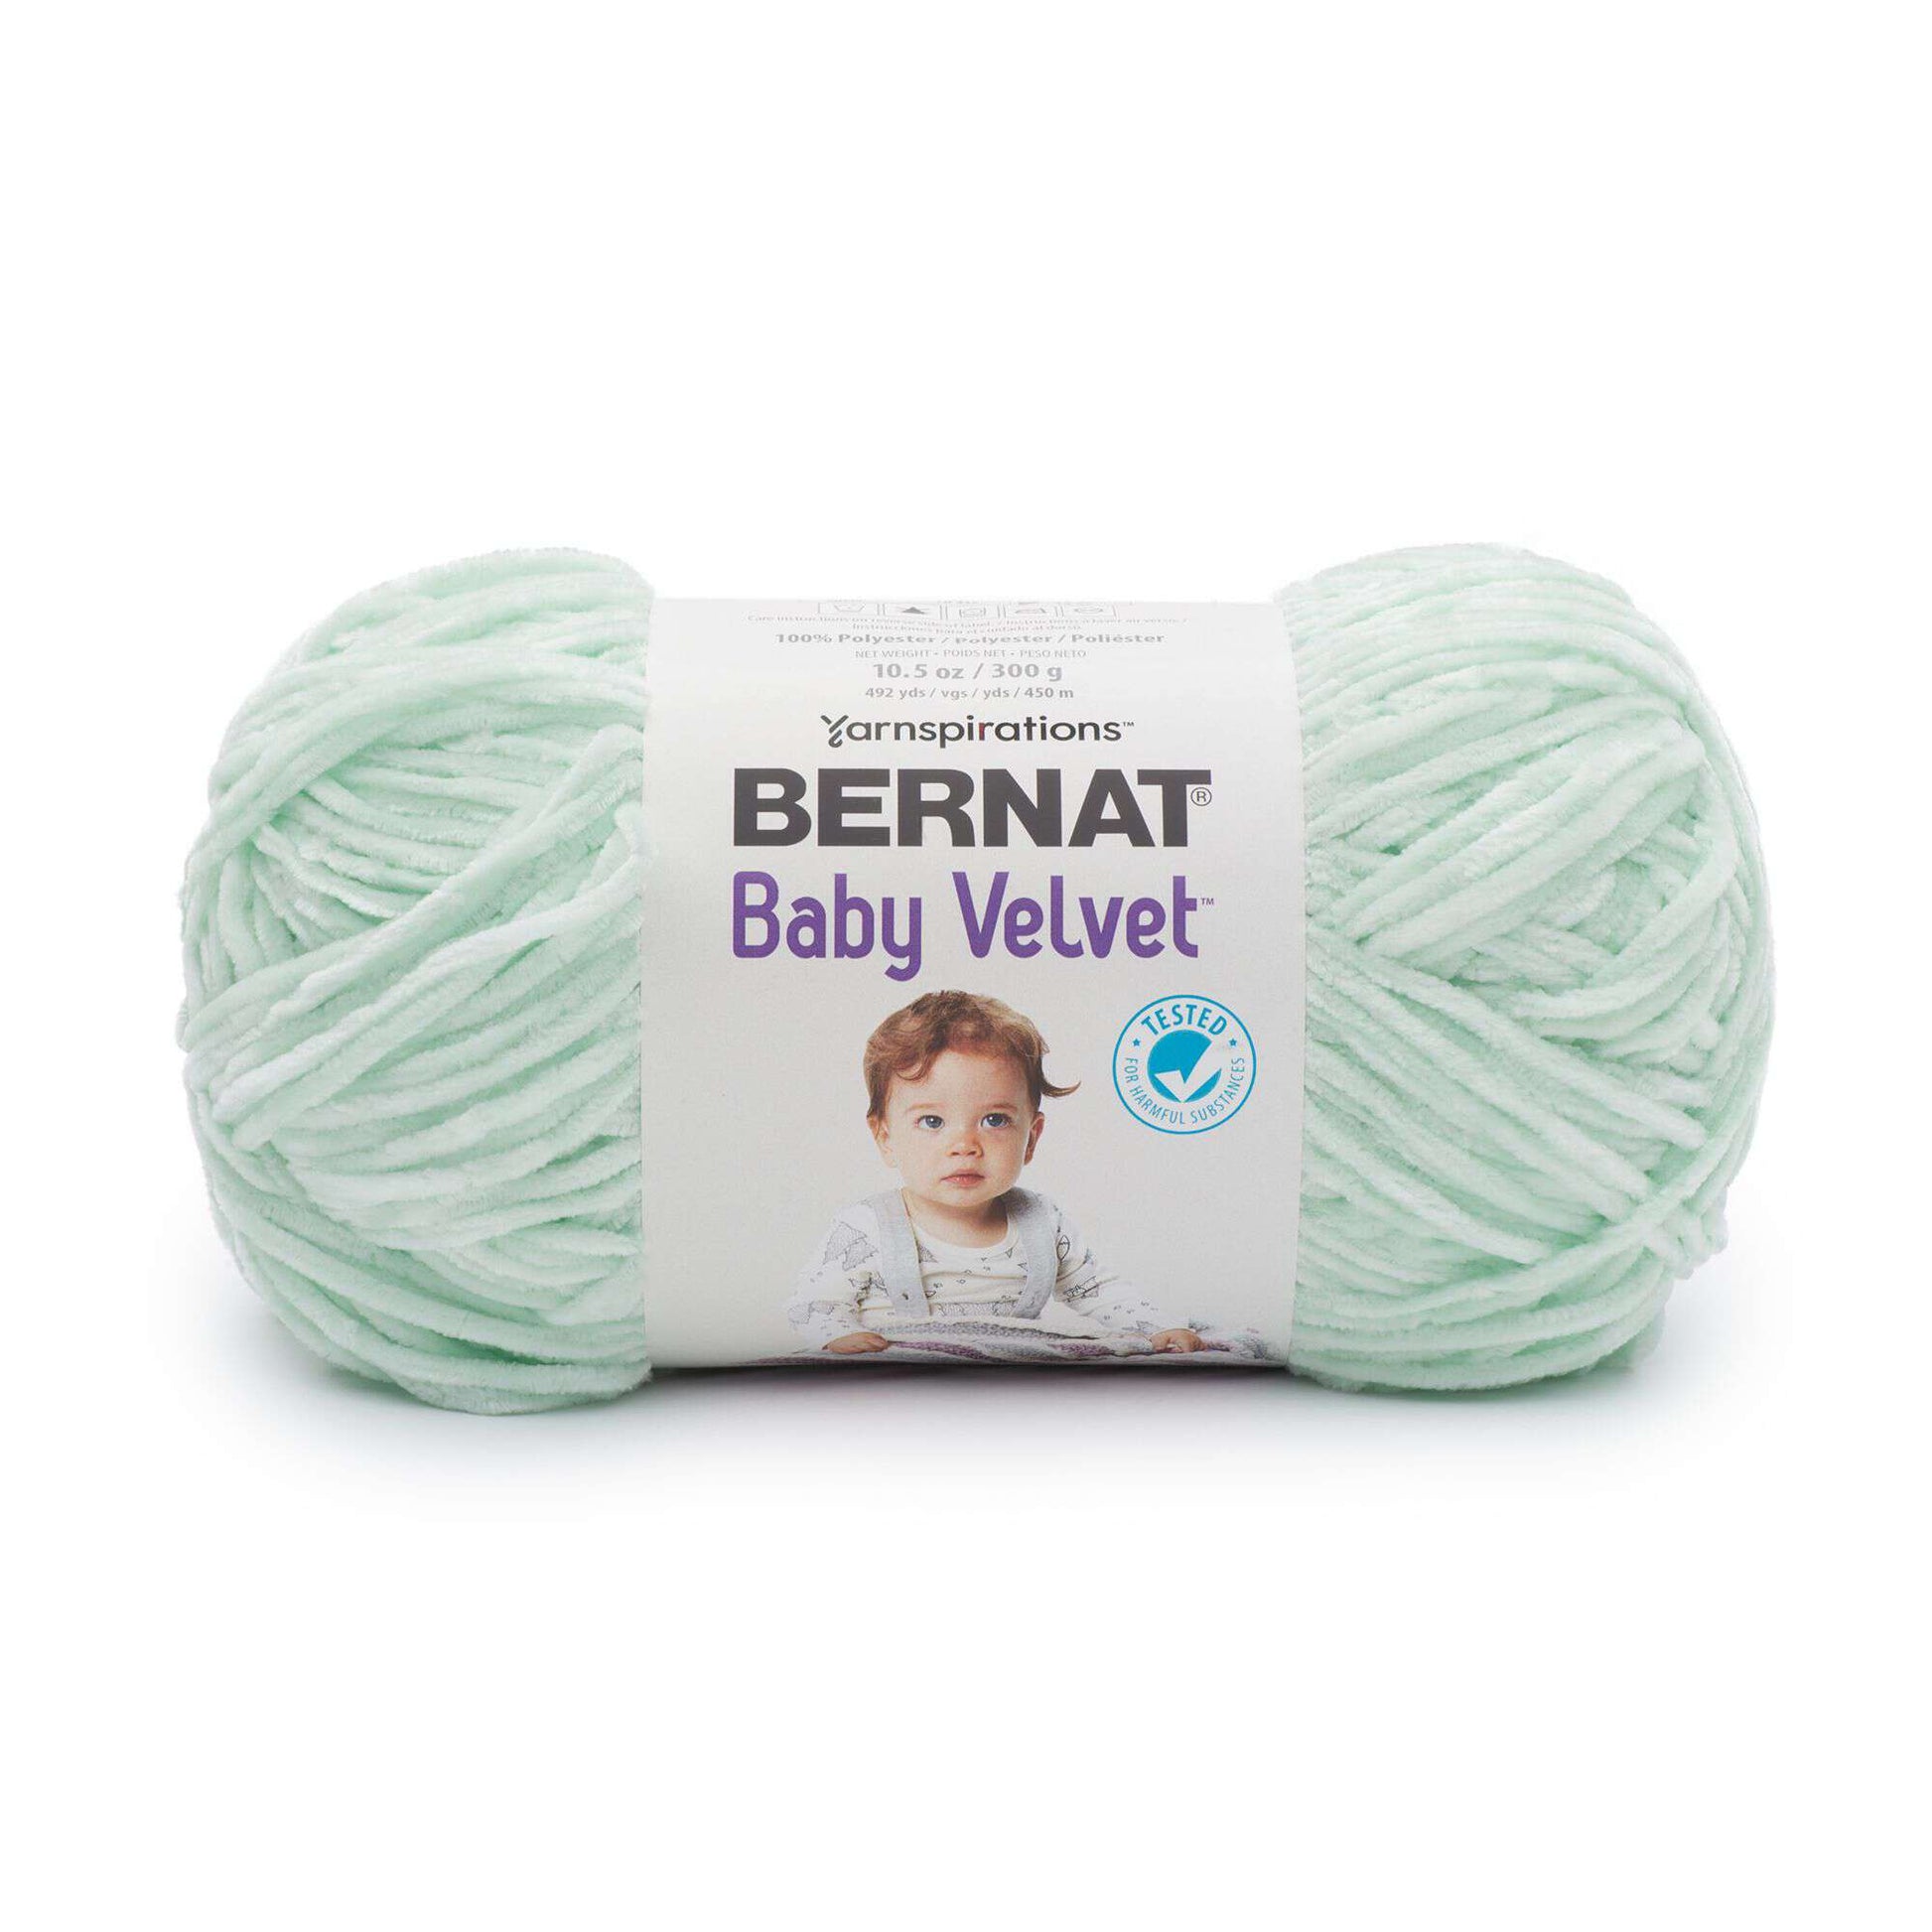 Bernat Baby Velvet Yarn (300g/10.5oz)